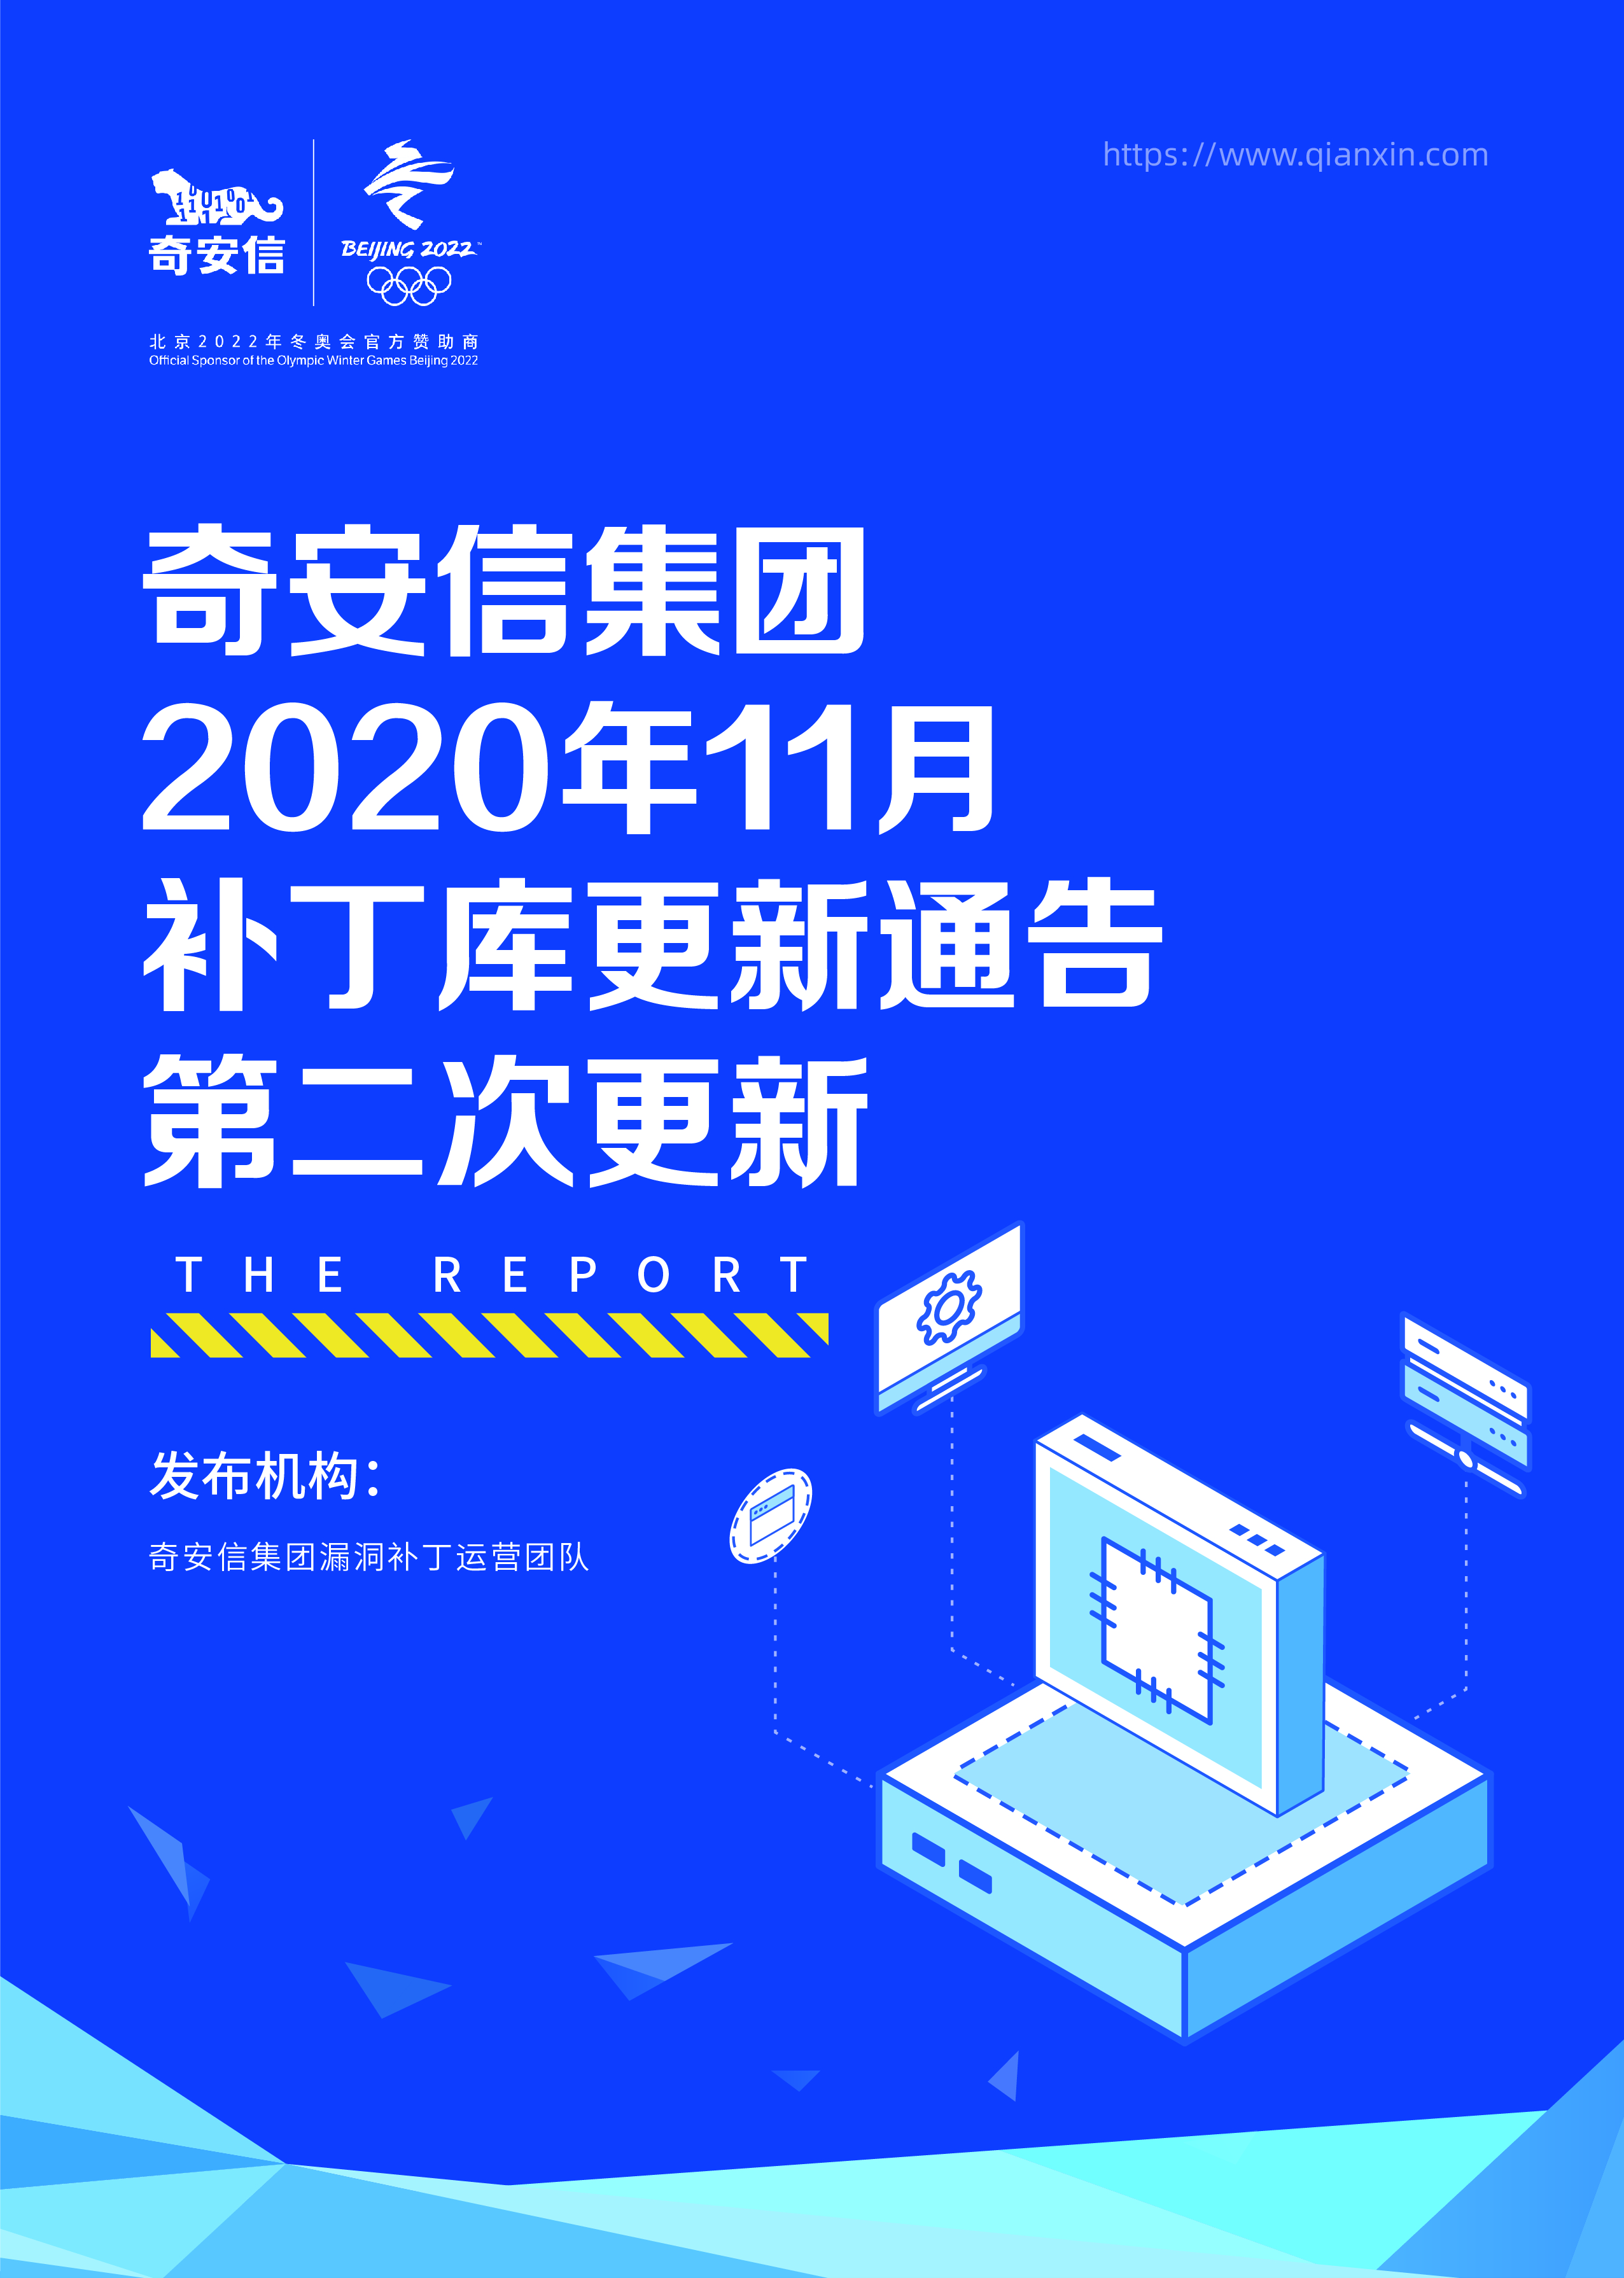 奇安信集团2020年11月补丁库更新通告第二次更新